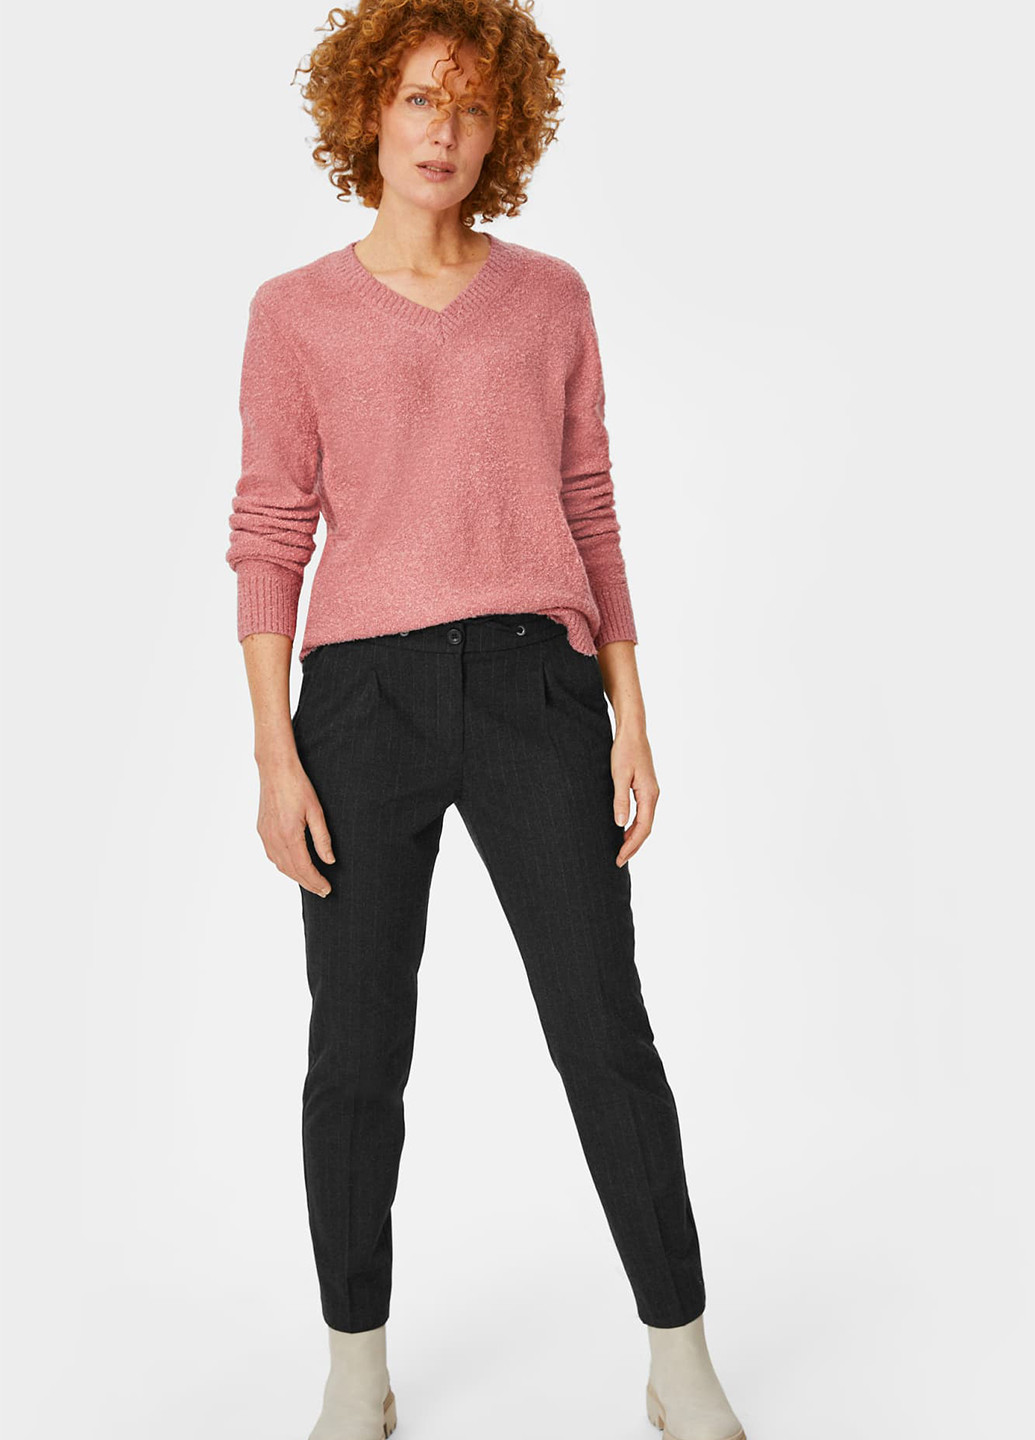 Розовый демисезонный пуловер пуловер C&A